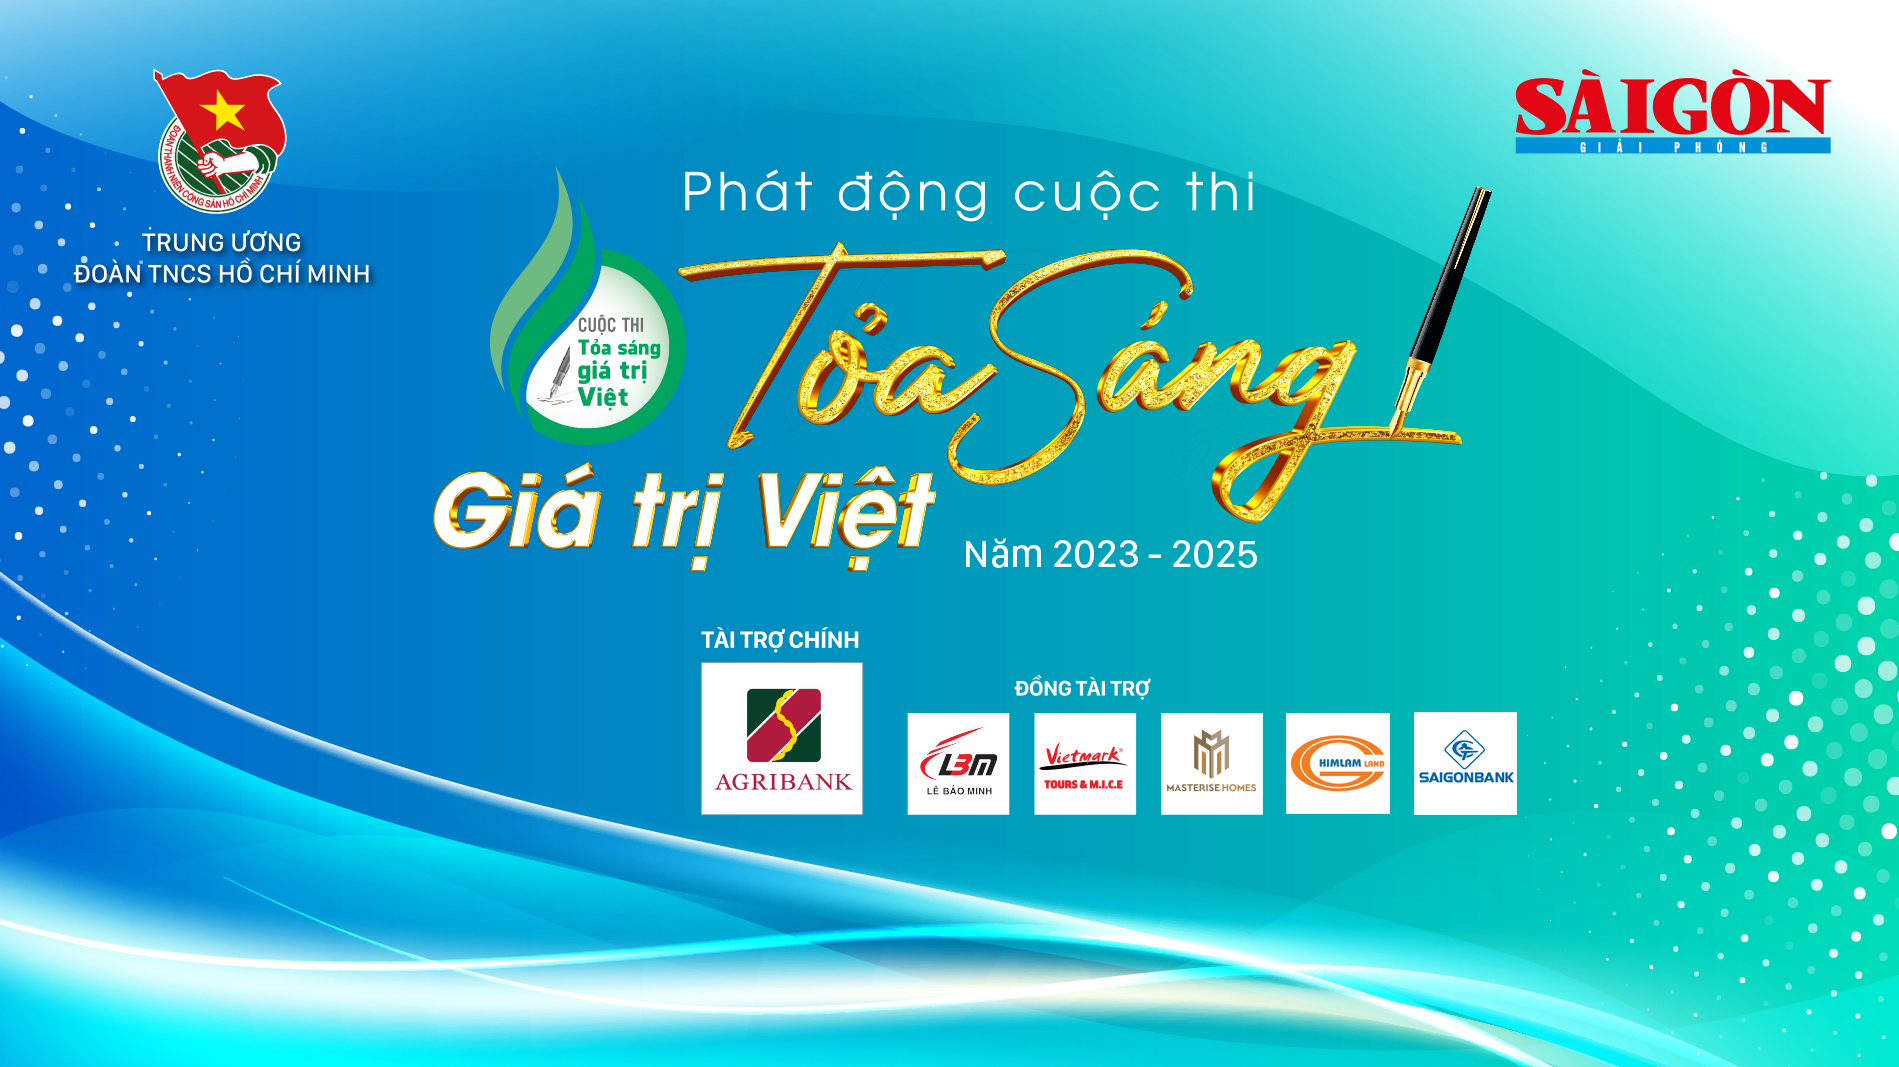 Phát động Cuộc thi "Tỏa sáng giá trị Việt" giai đoạn 2023 - 2025 